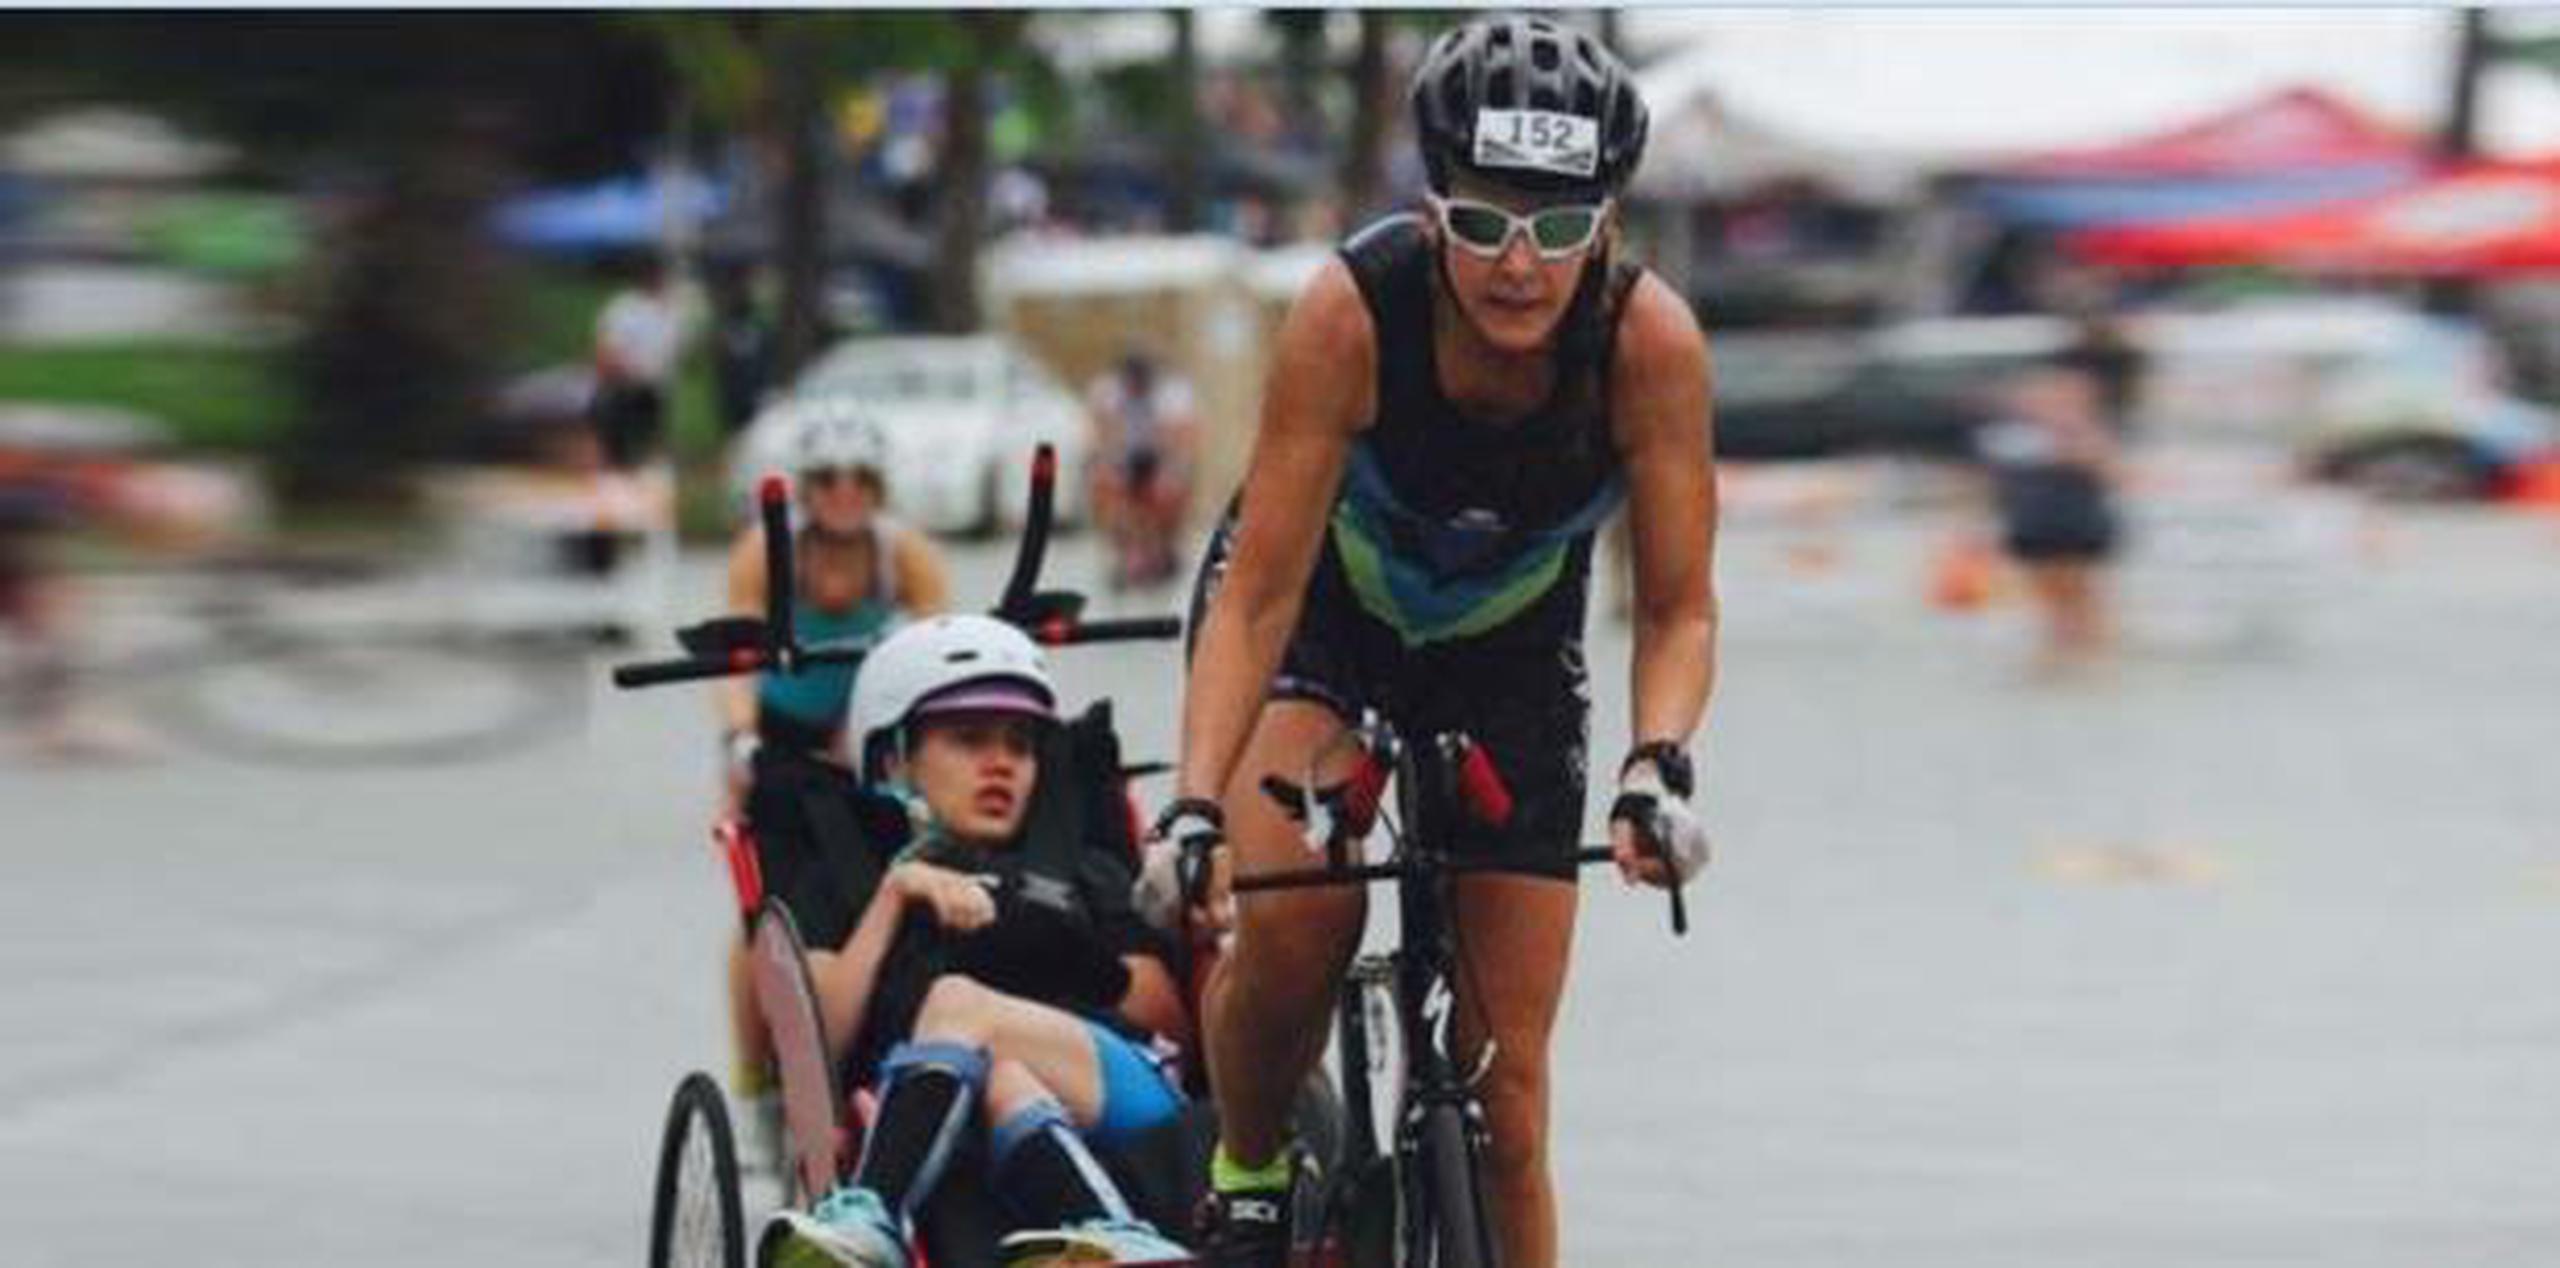 Beth no solo se propuso completar la meta de 155 millas arriba de una bicicleta, trotando y nadando, sino que además lo quiso hacer llevando en todo momento a su hija. (Captura)